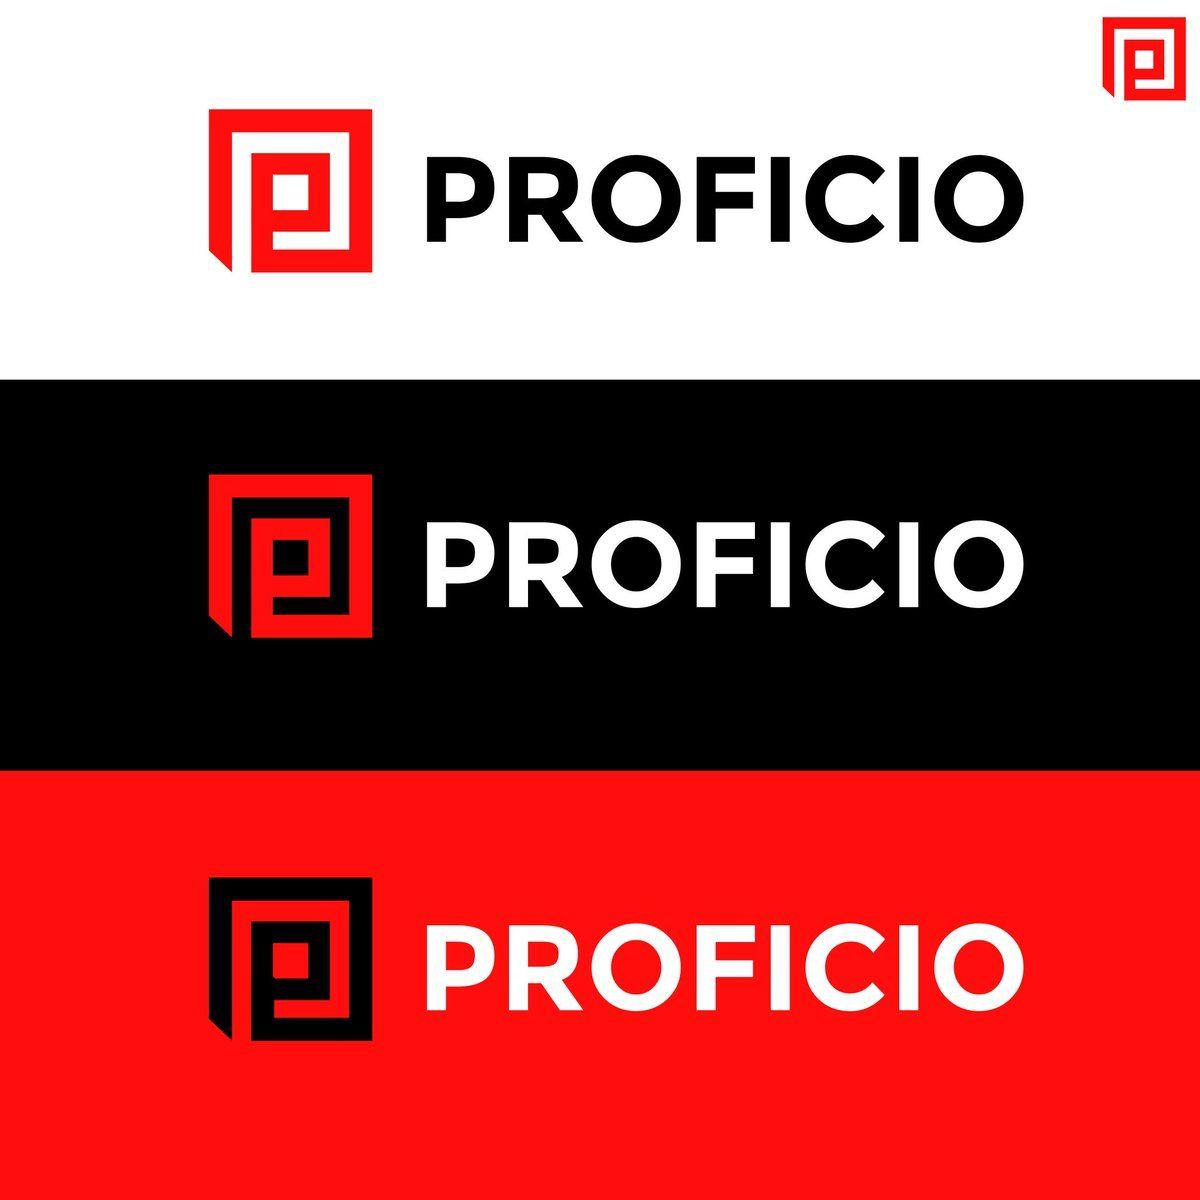 Proficio Logo - 3B DESIGNS Logo #logo #logodesign